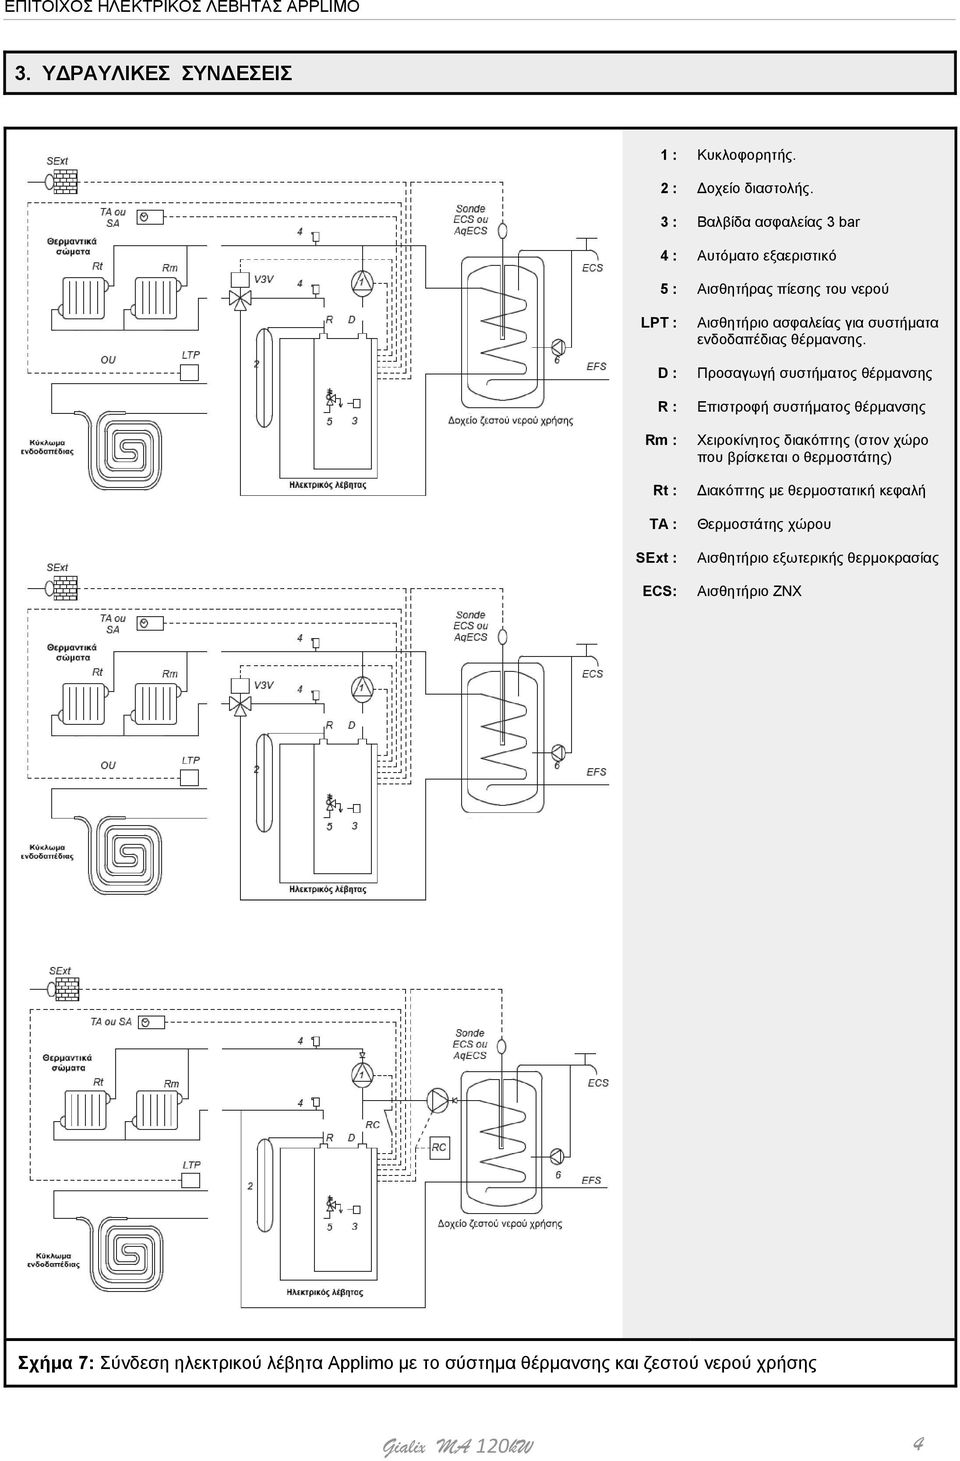 Προσαγωγή συστήματος θέρμανσης Επιστροφή συστήματος θέρμανσης Χειροκίνητος διακόπτης (στον χώρο που βρίσκεται ο θερμοστάτης) Διακόπτης με